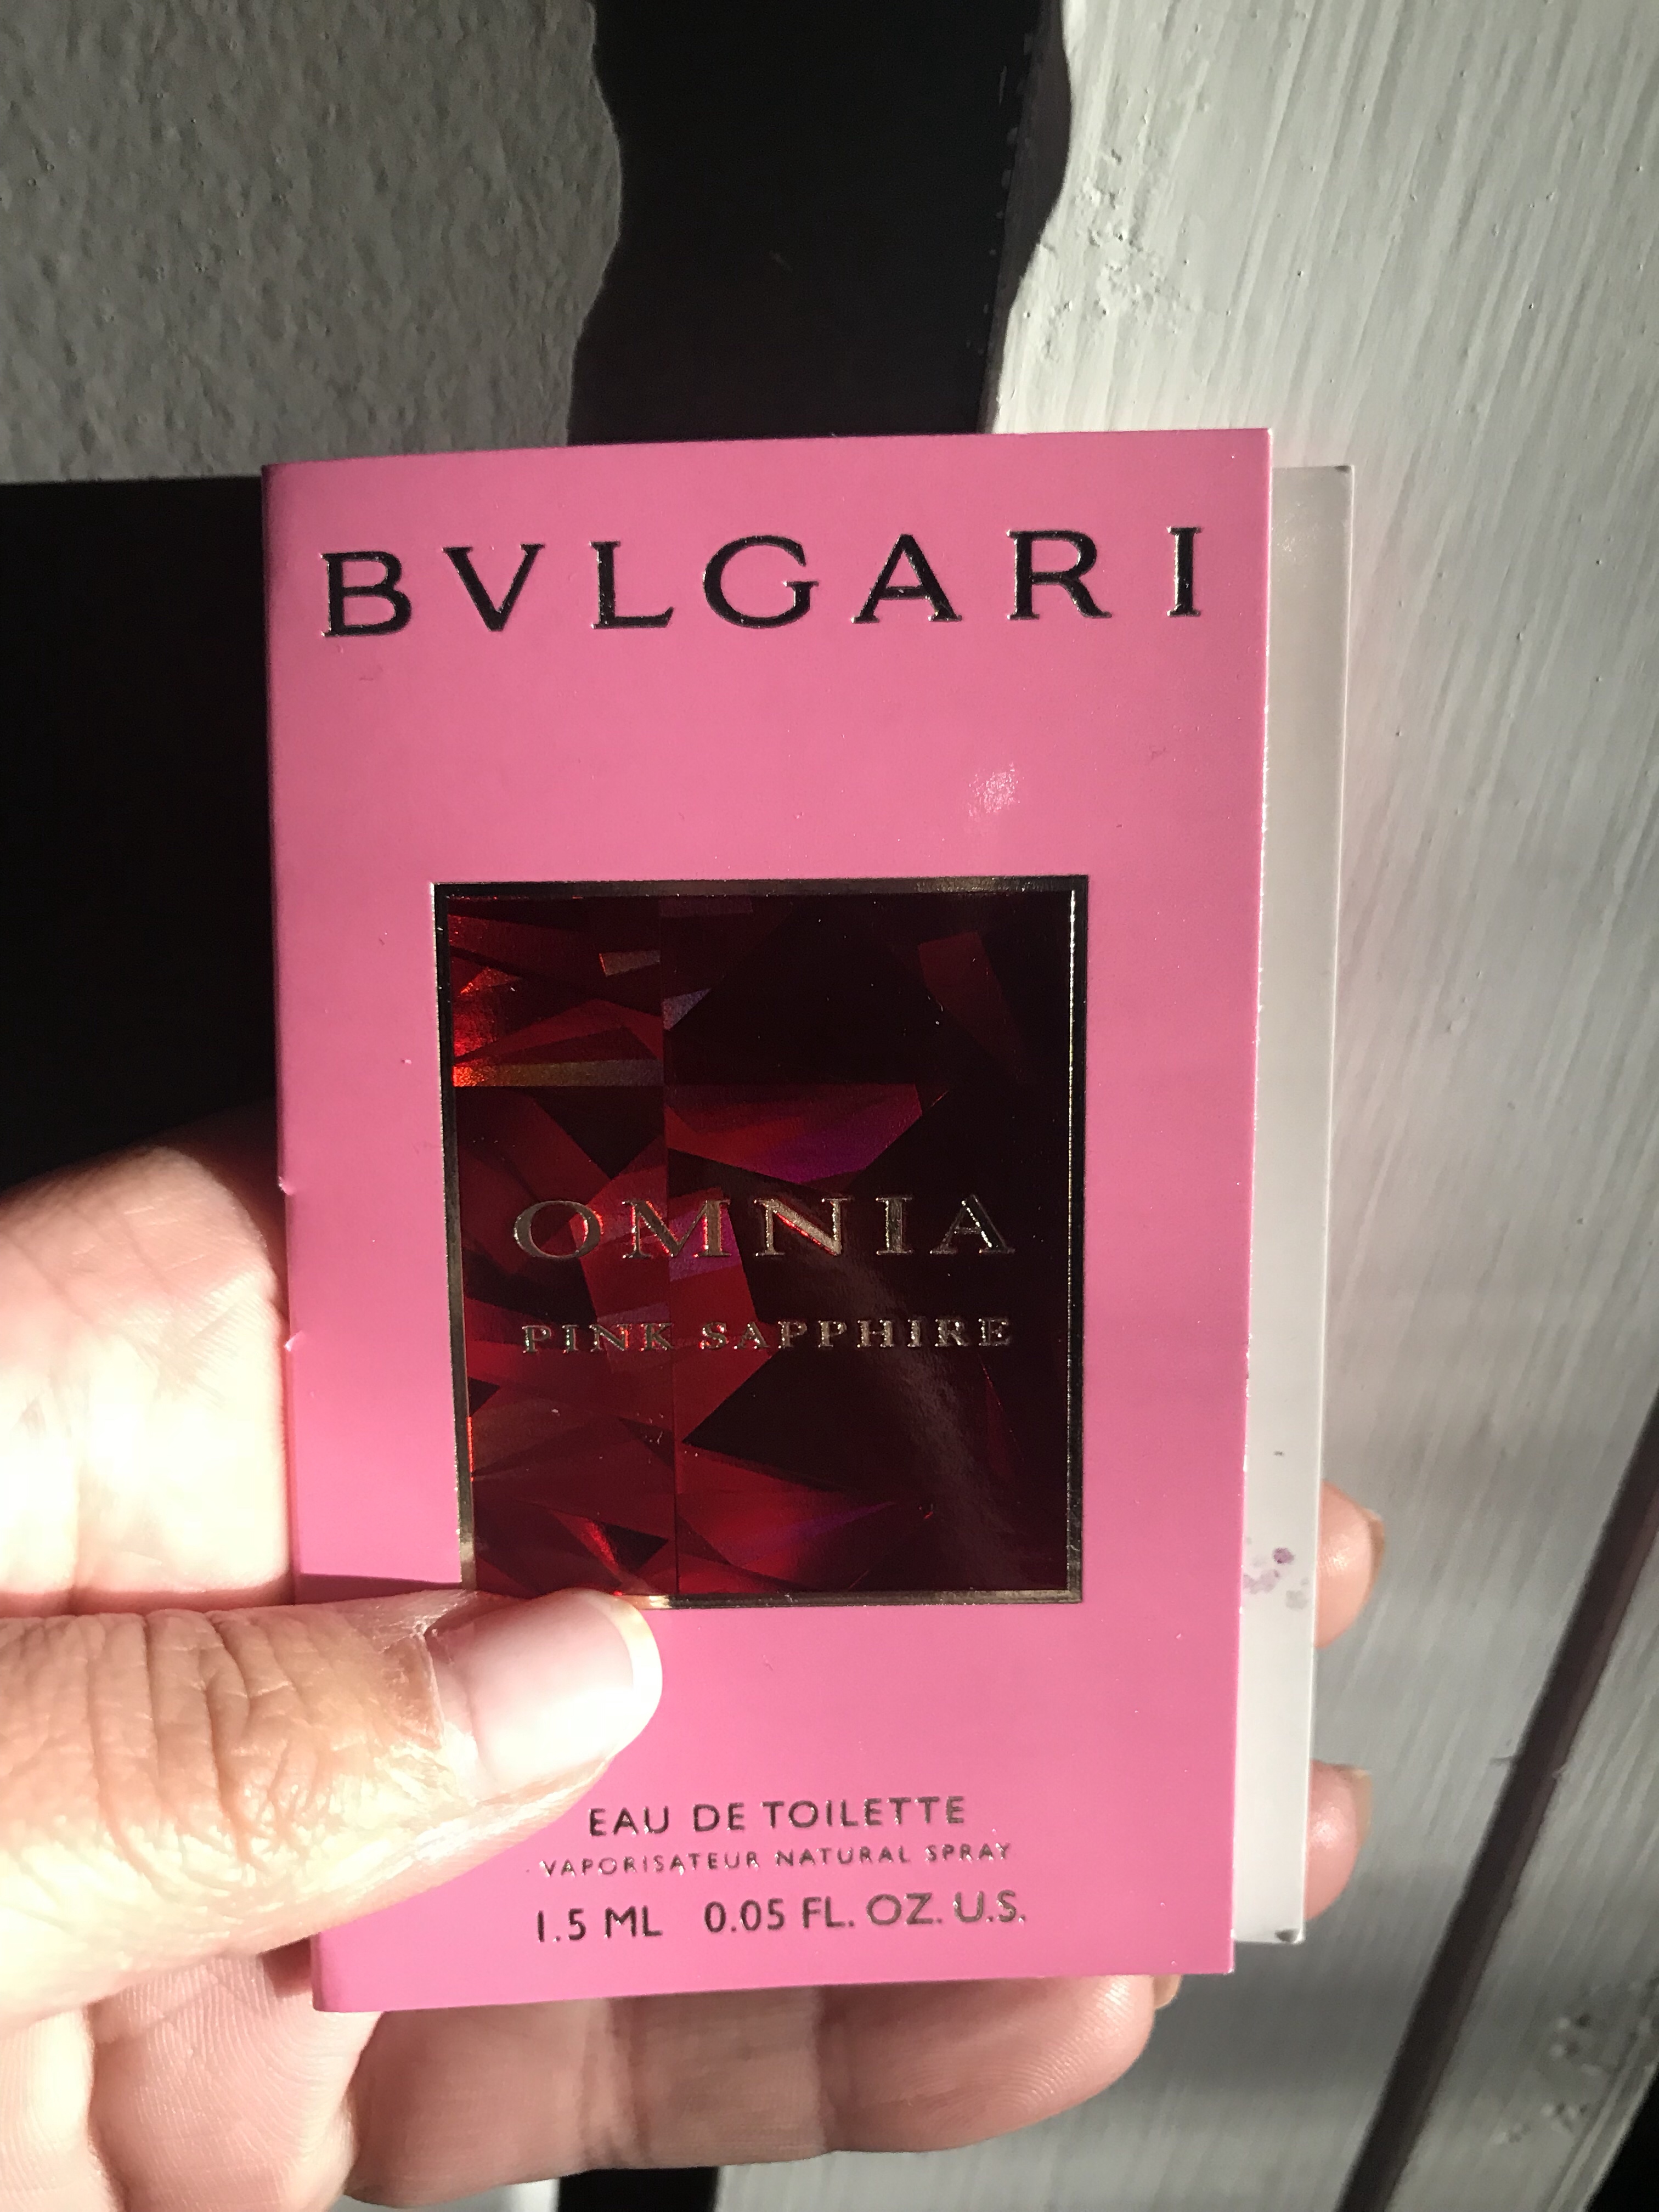 bvlgari pink sapphire sample